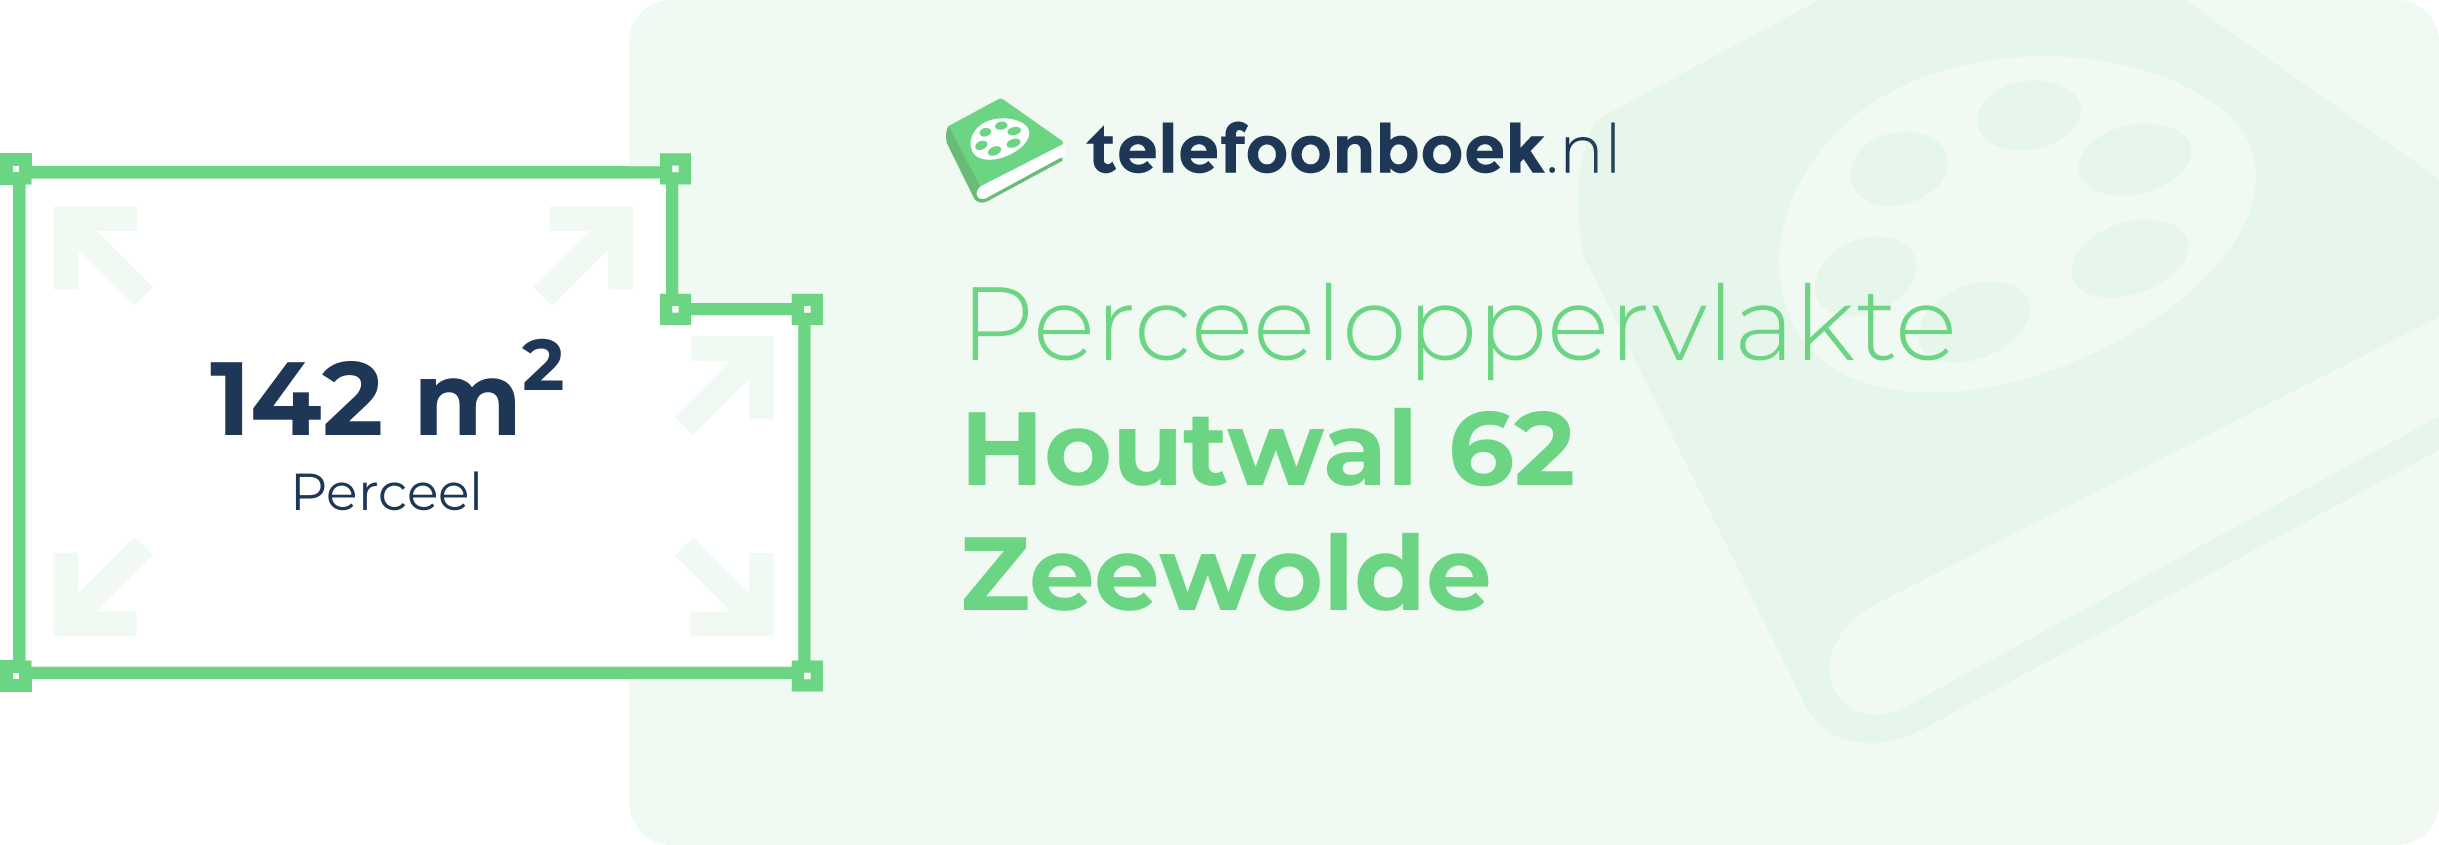 Perceeloppervlakte Houtwal 62 Zeewolde